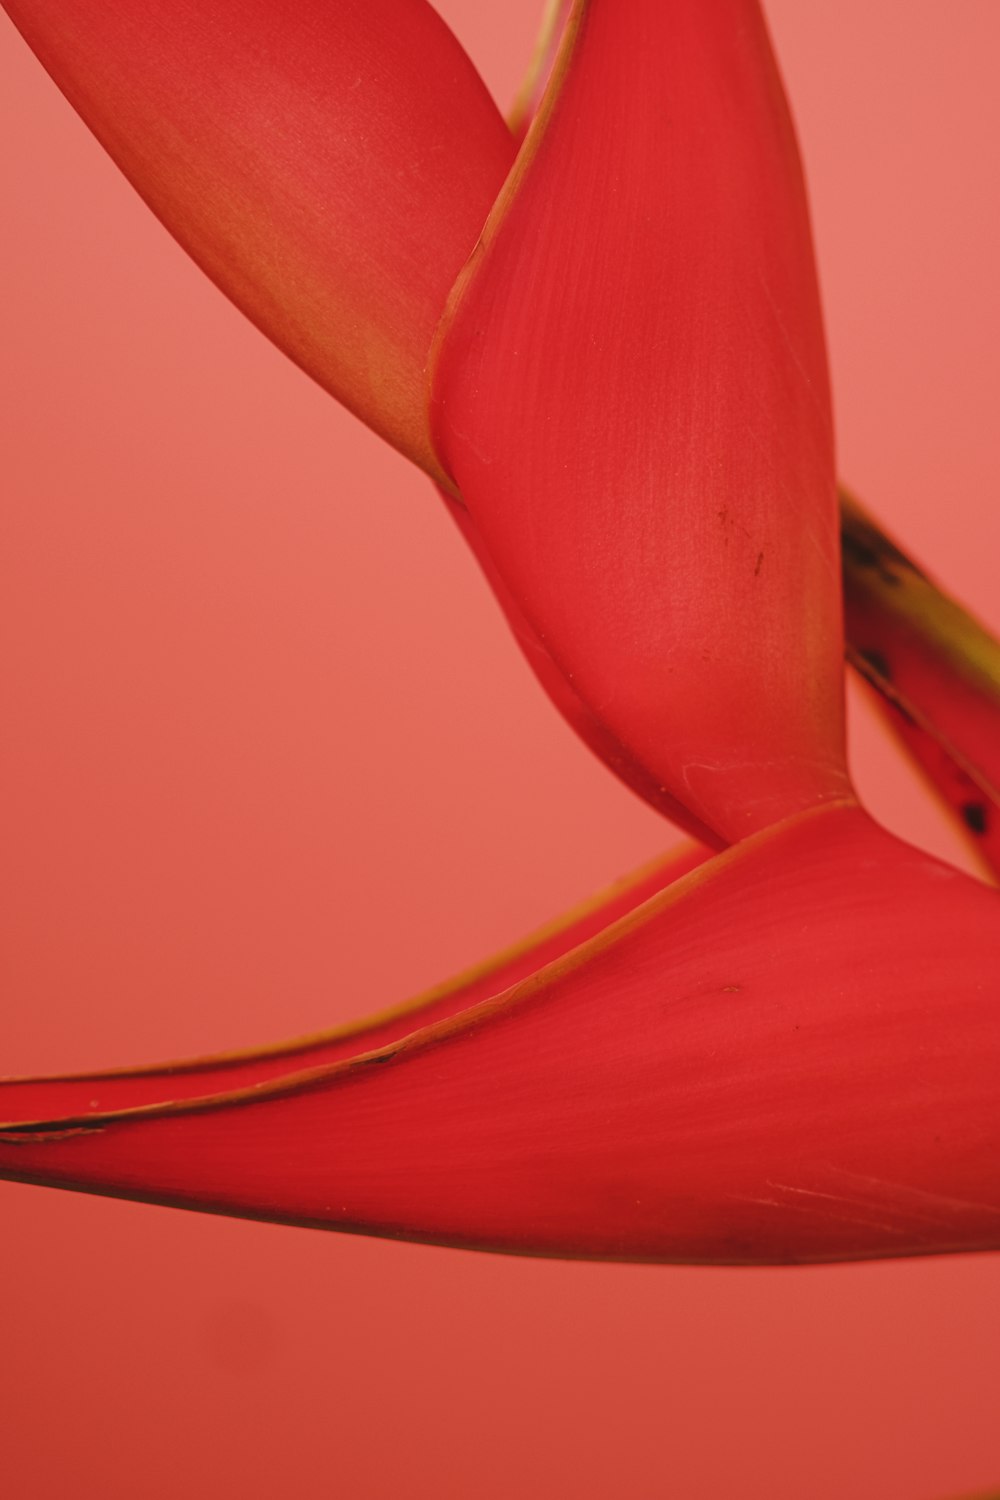 Un primer plano de una flor roja sobre un fondo rosa